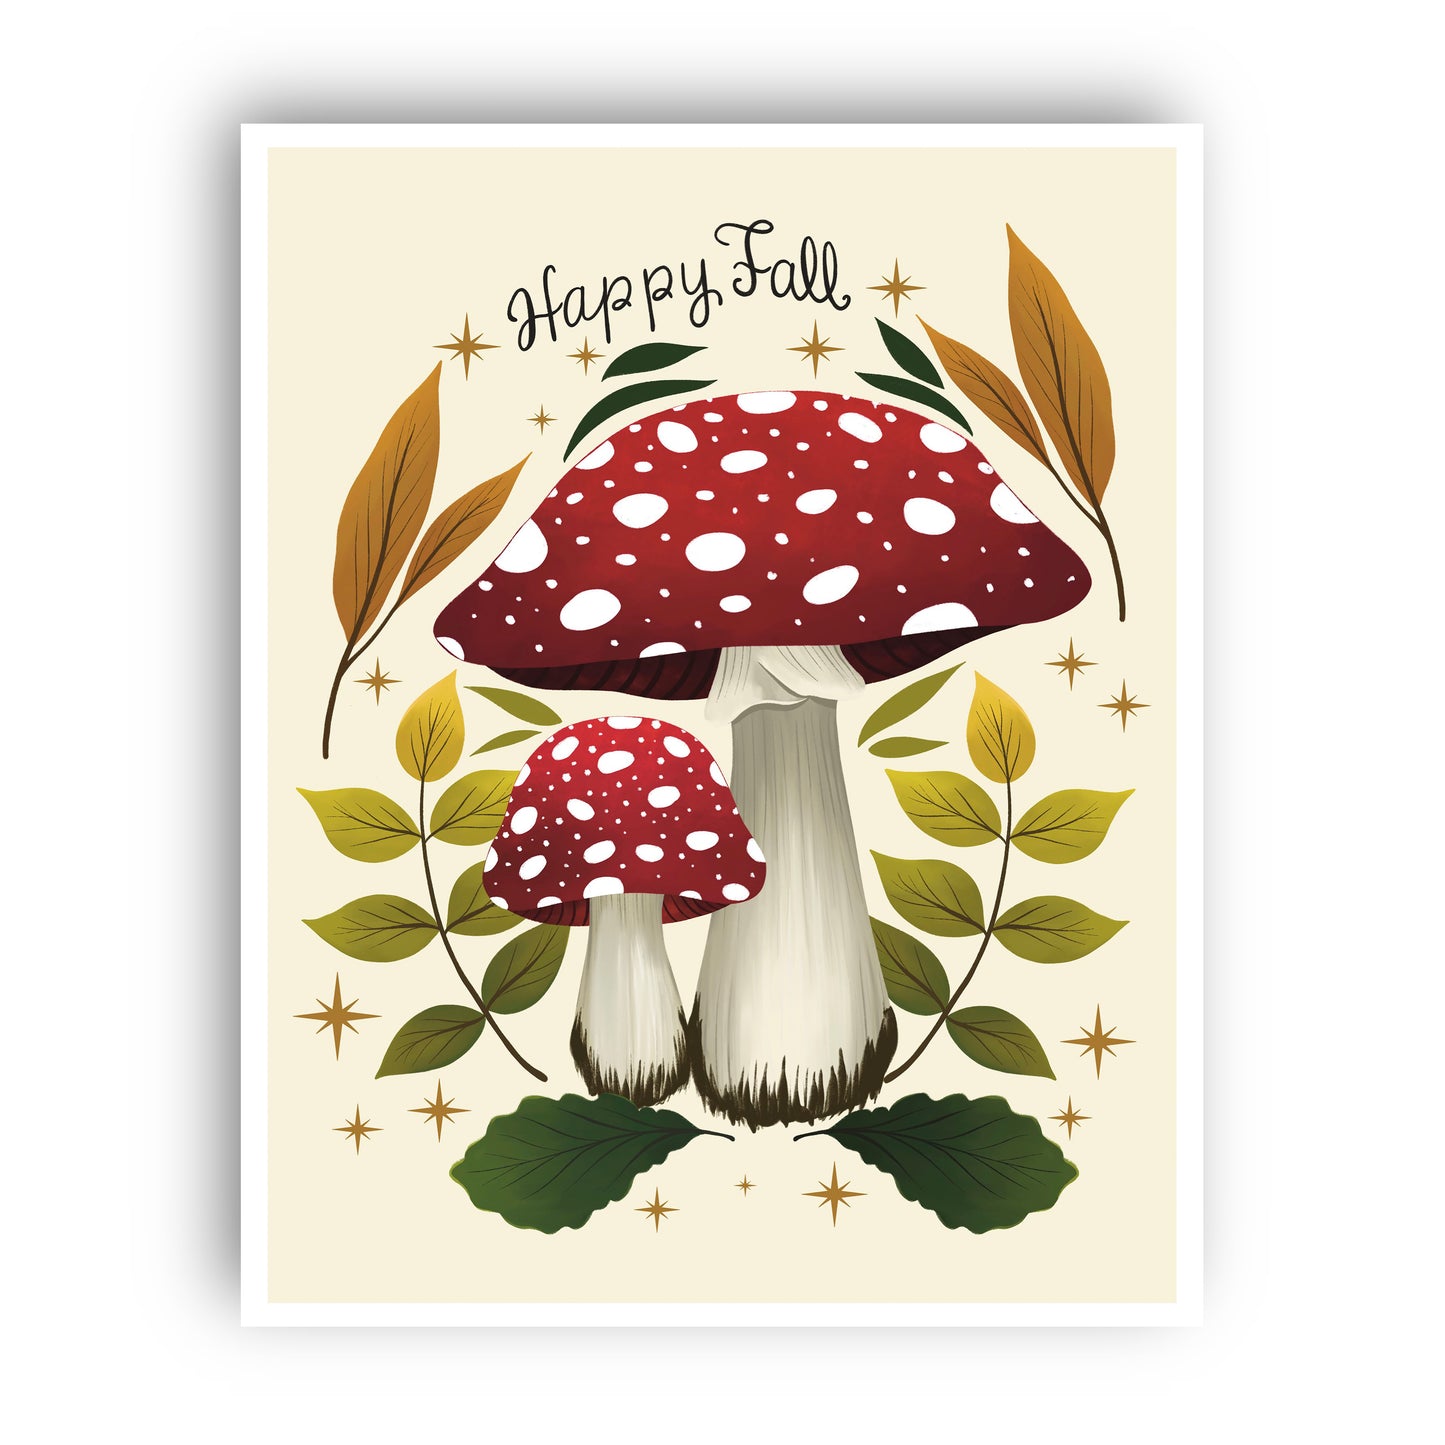 Fall Mushrooms Wall Art Print